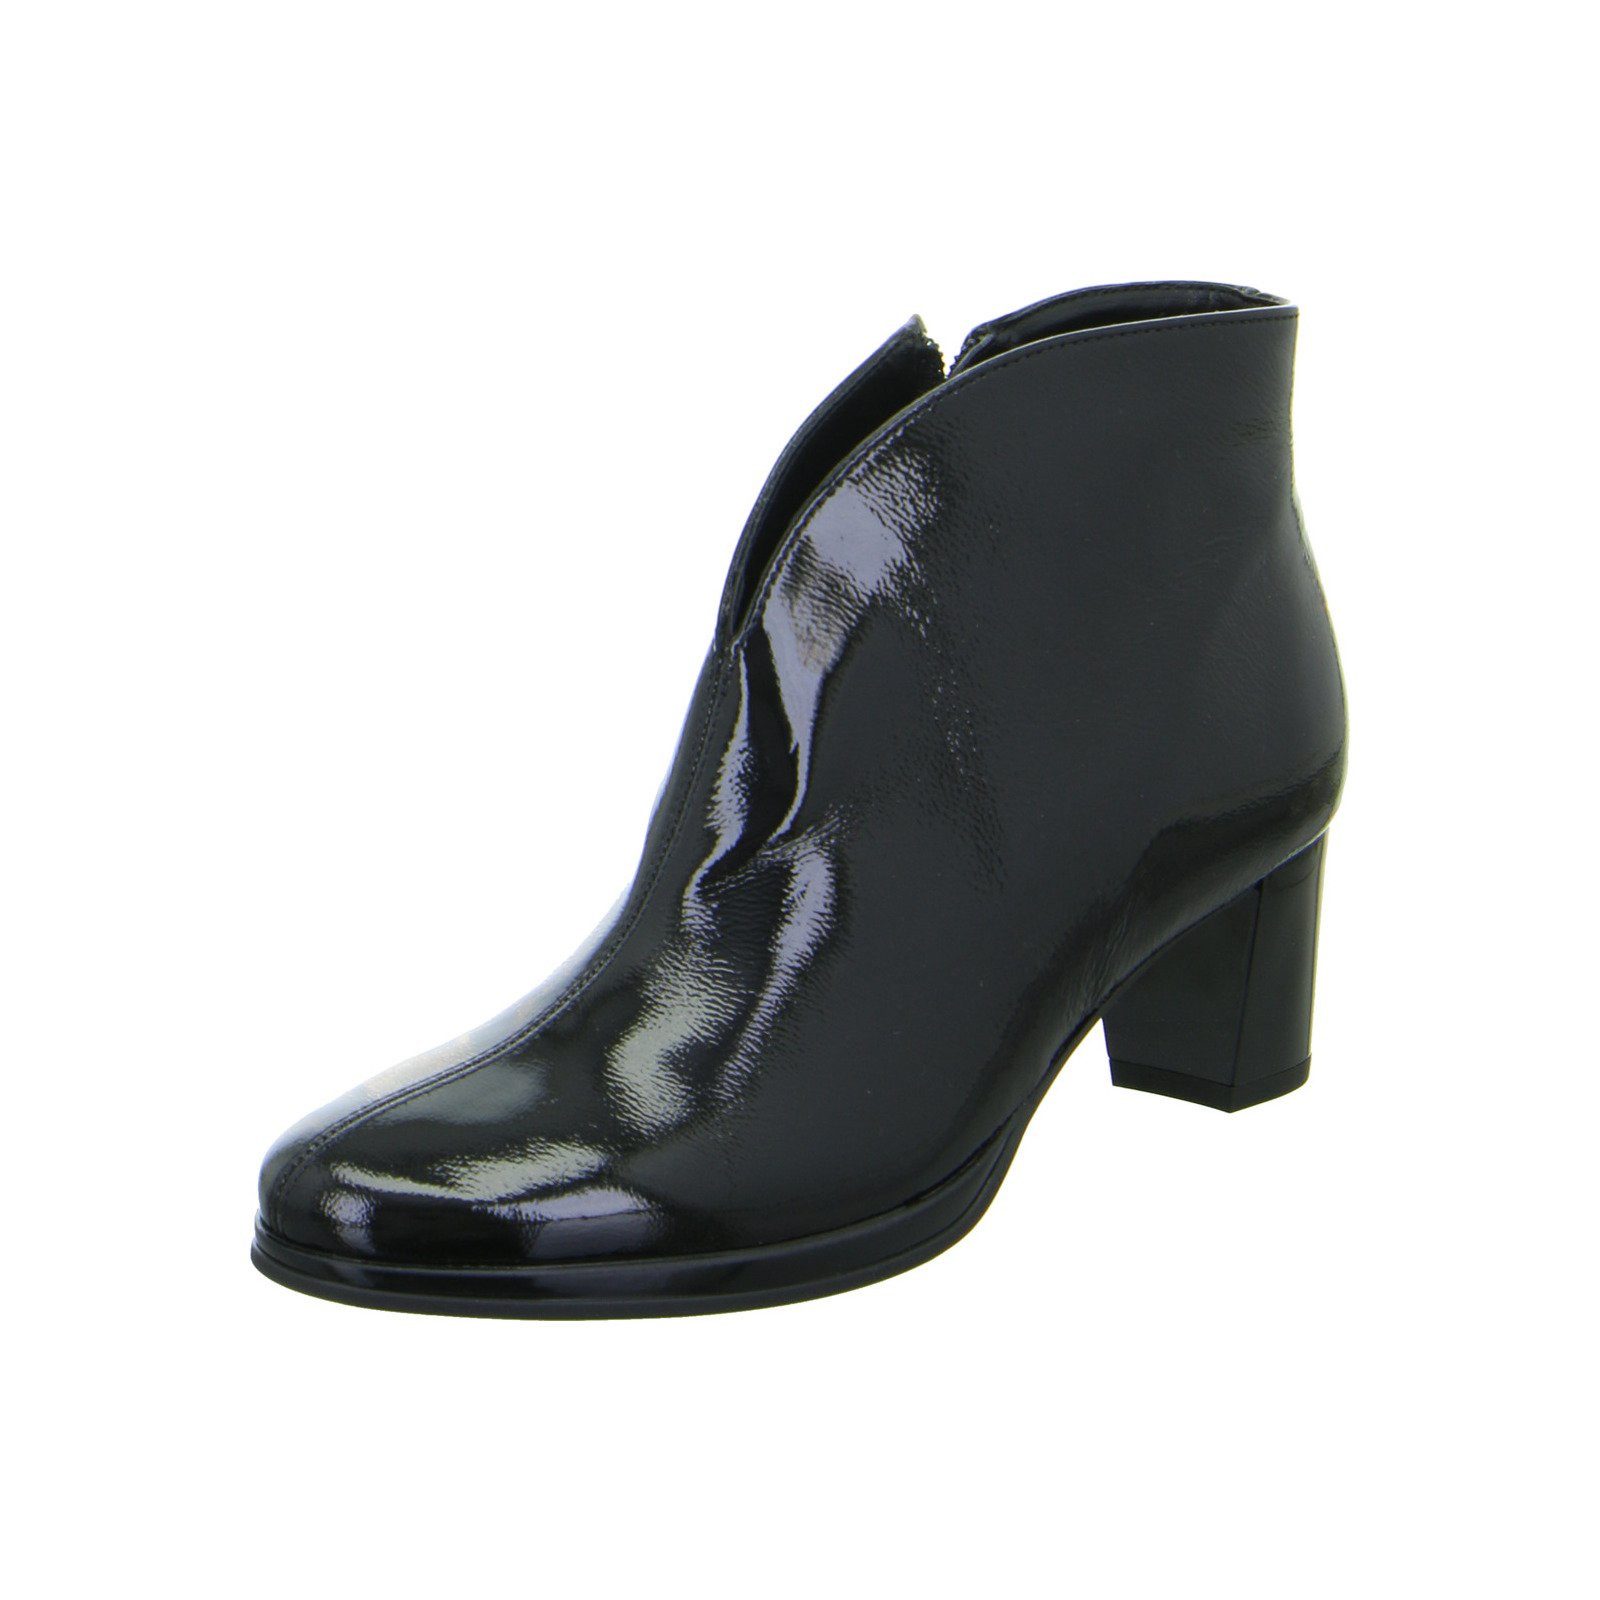 Ara Orly - Damen Schuhe Stiefelette Stiefeletten Lackleder schwarz